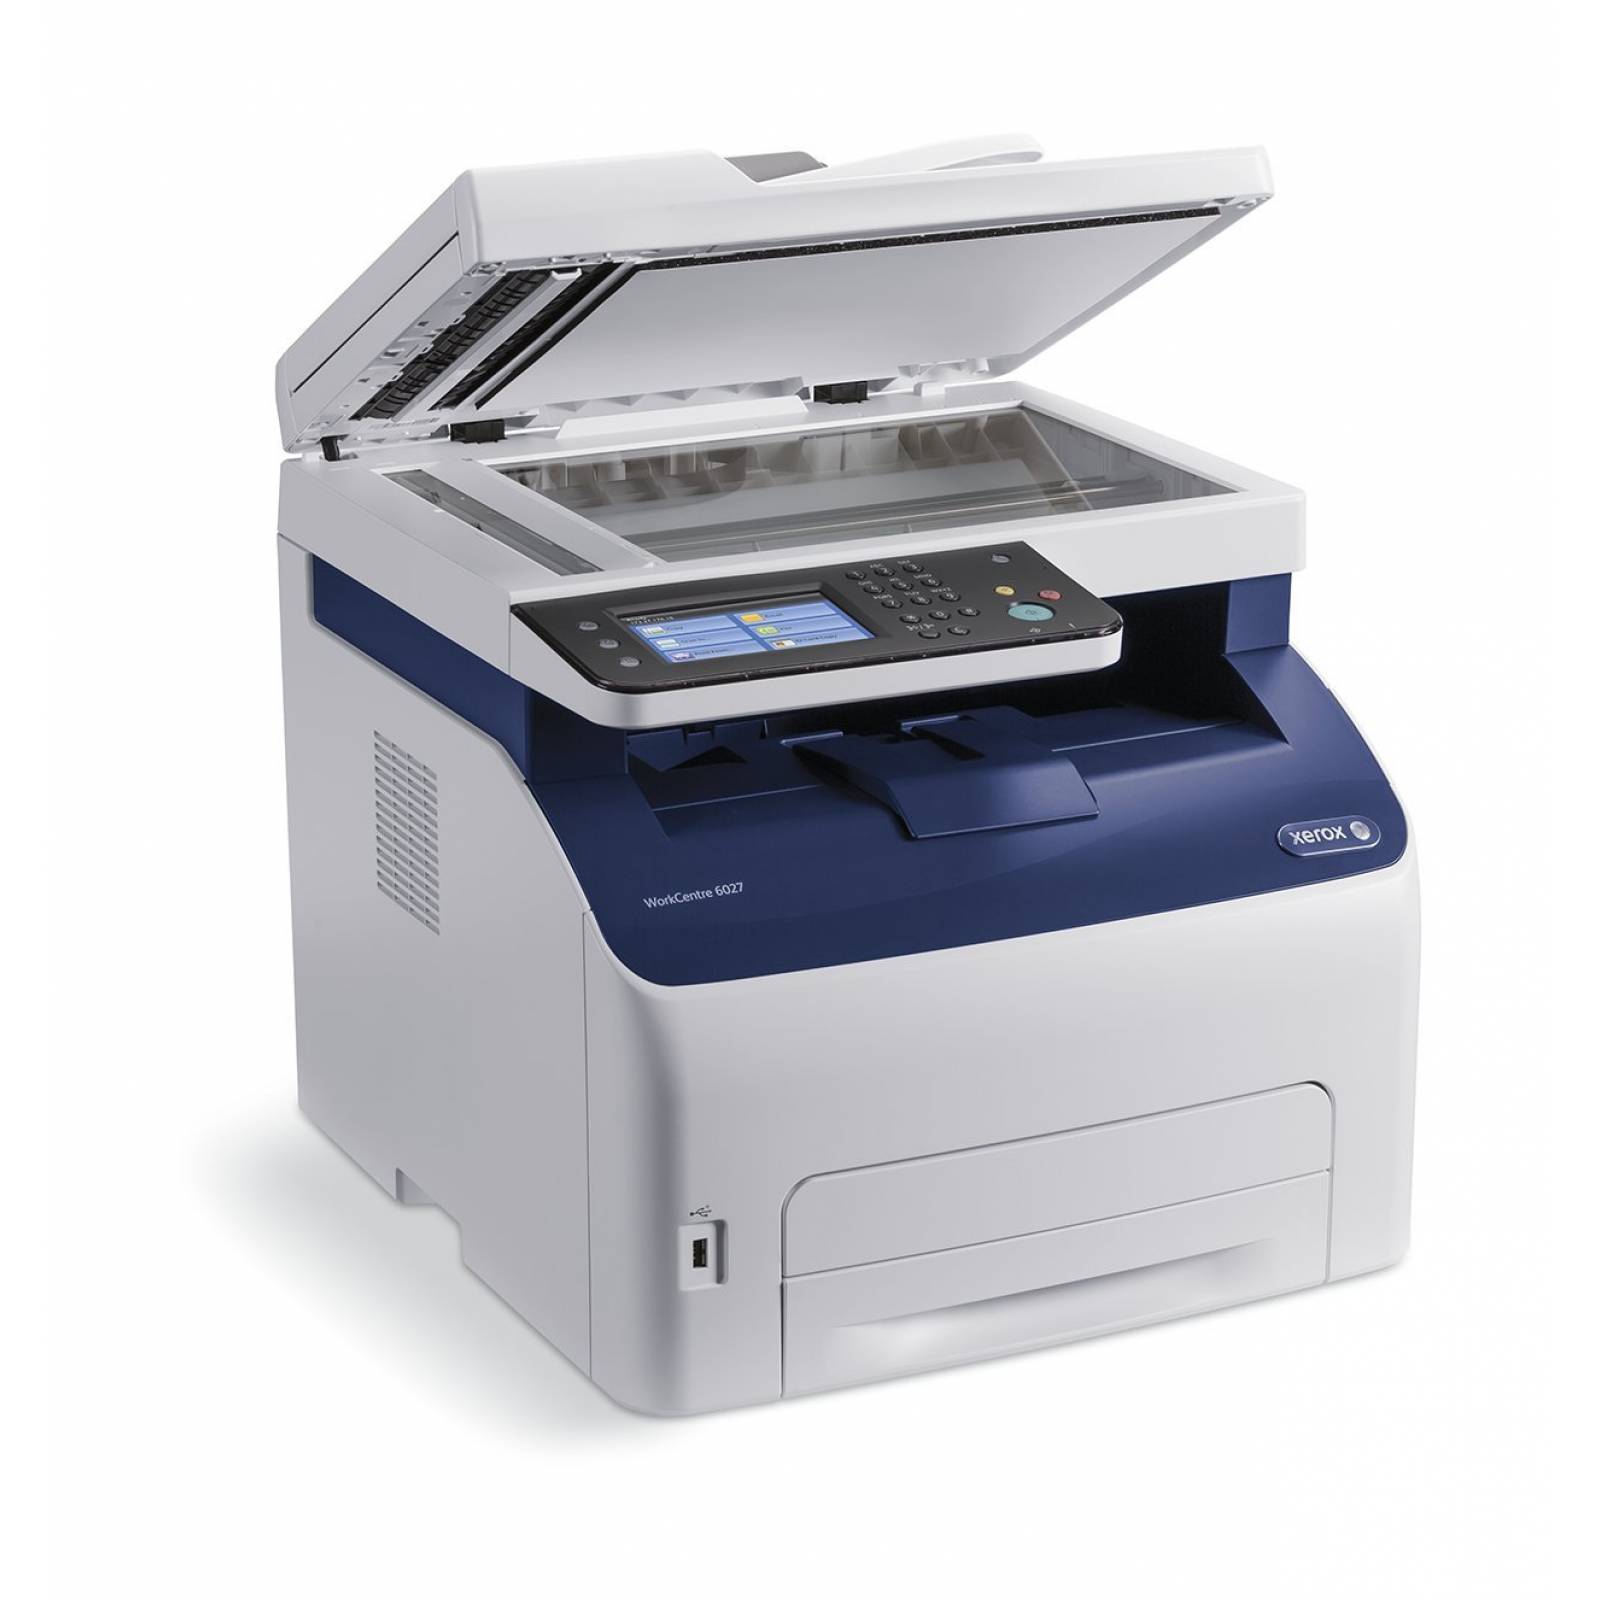 Impresora multifunción Xerox WorkCentre 6027/NI Color inalám